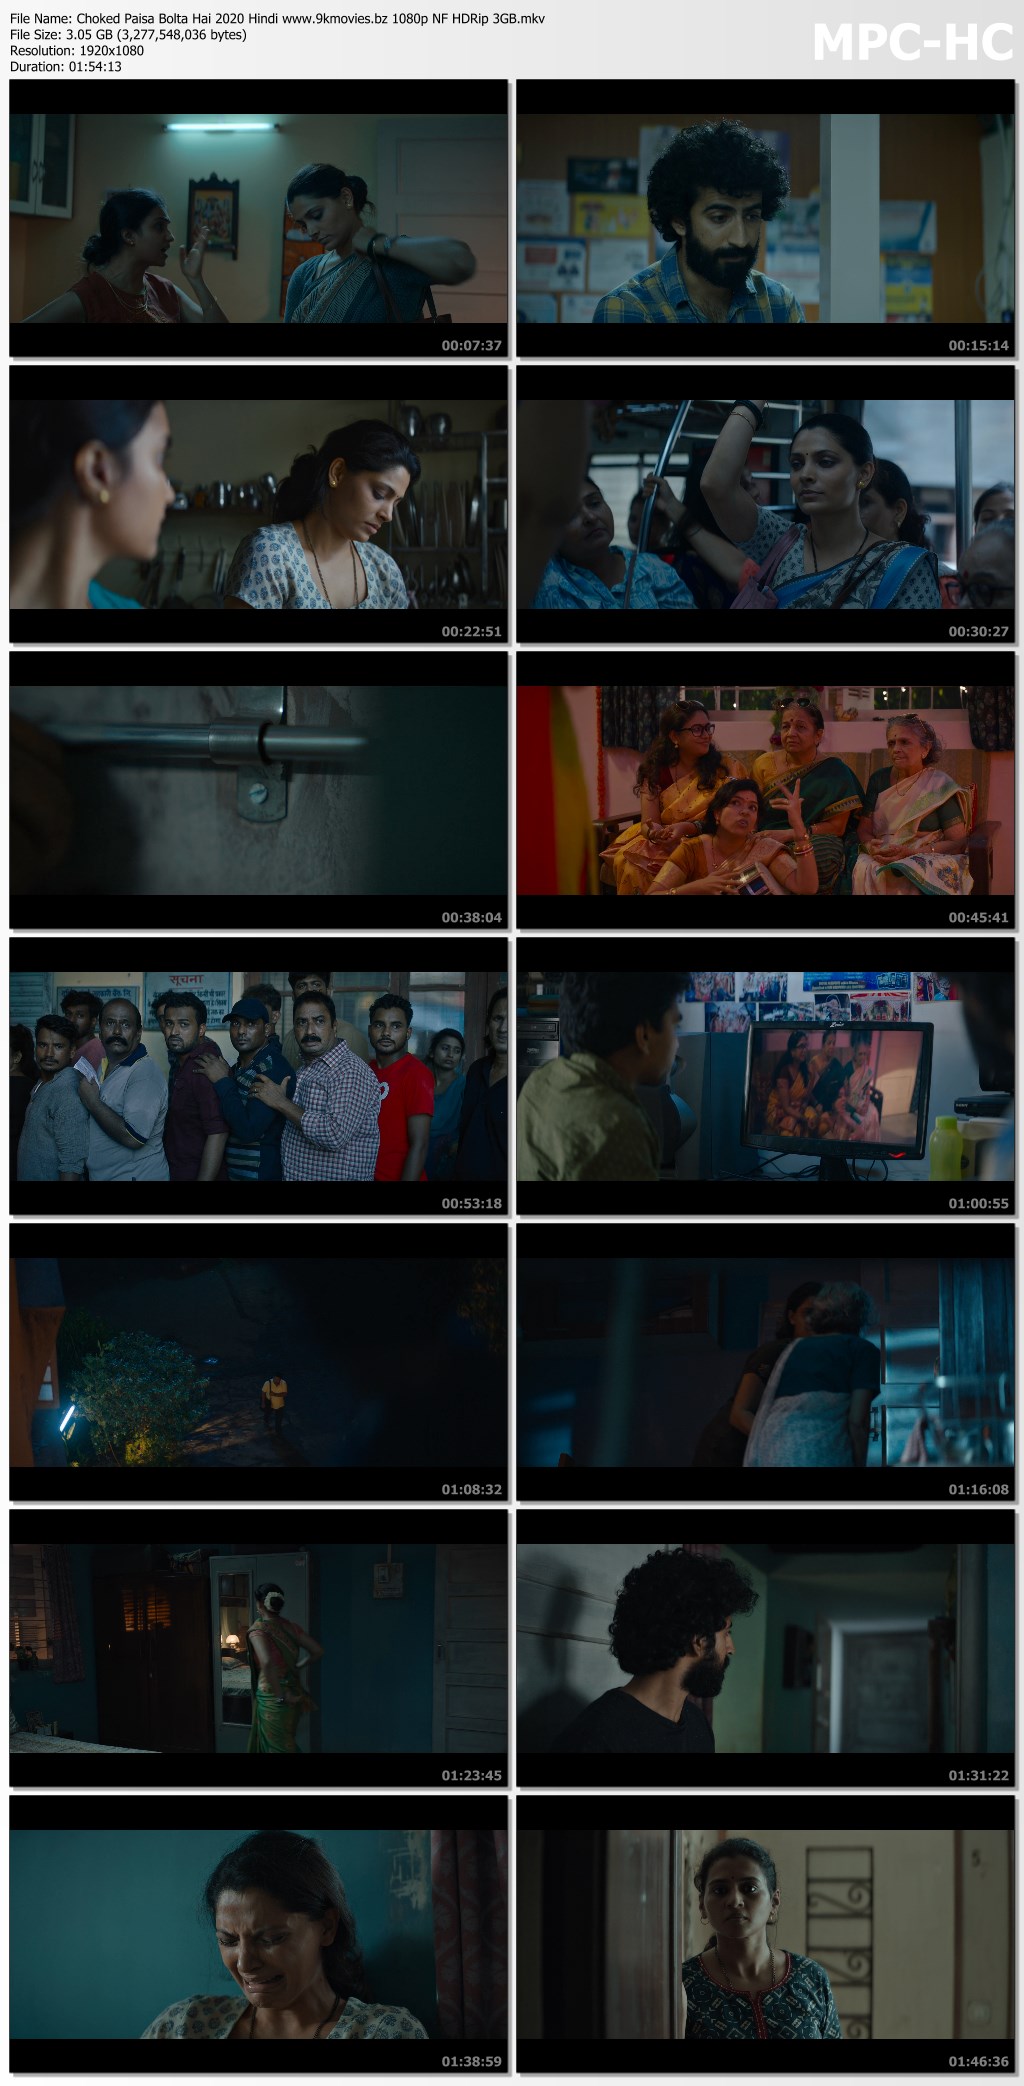 Choked Paisa Bolta Hai (2020) Hindi 1080p NF HDRip Hindi x264 MSub.mkv - Google Drive